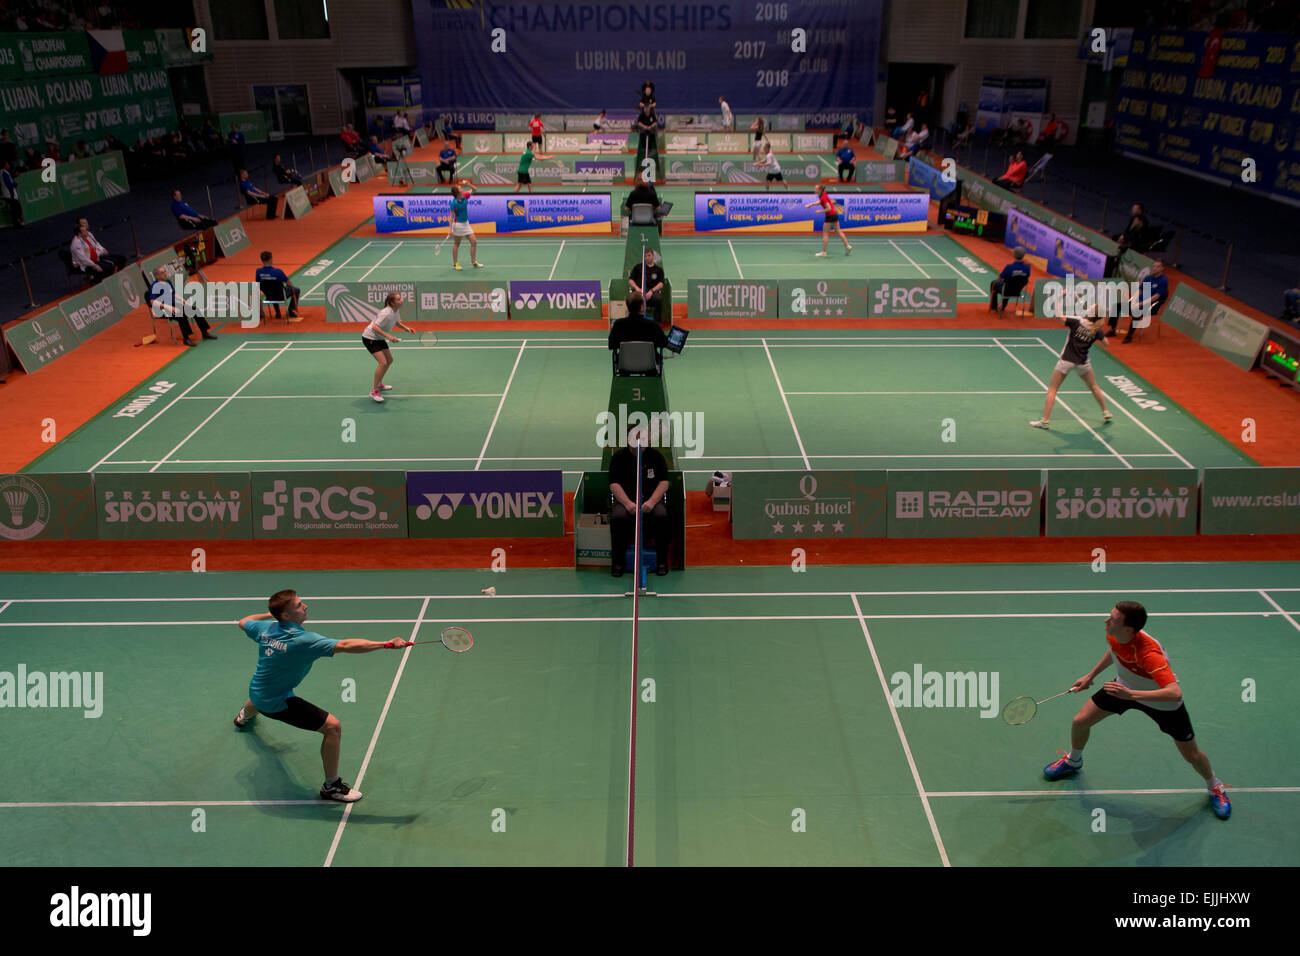 Lubin, Pologne. Mar 27, 2015. Tournoi de badminton en équipe lors des Championnats d'Europe Junior 2015. Crédit : Piotr Dziurman Match/Alamy Live News Banque D'Images